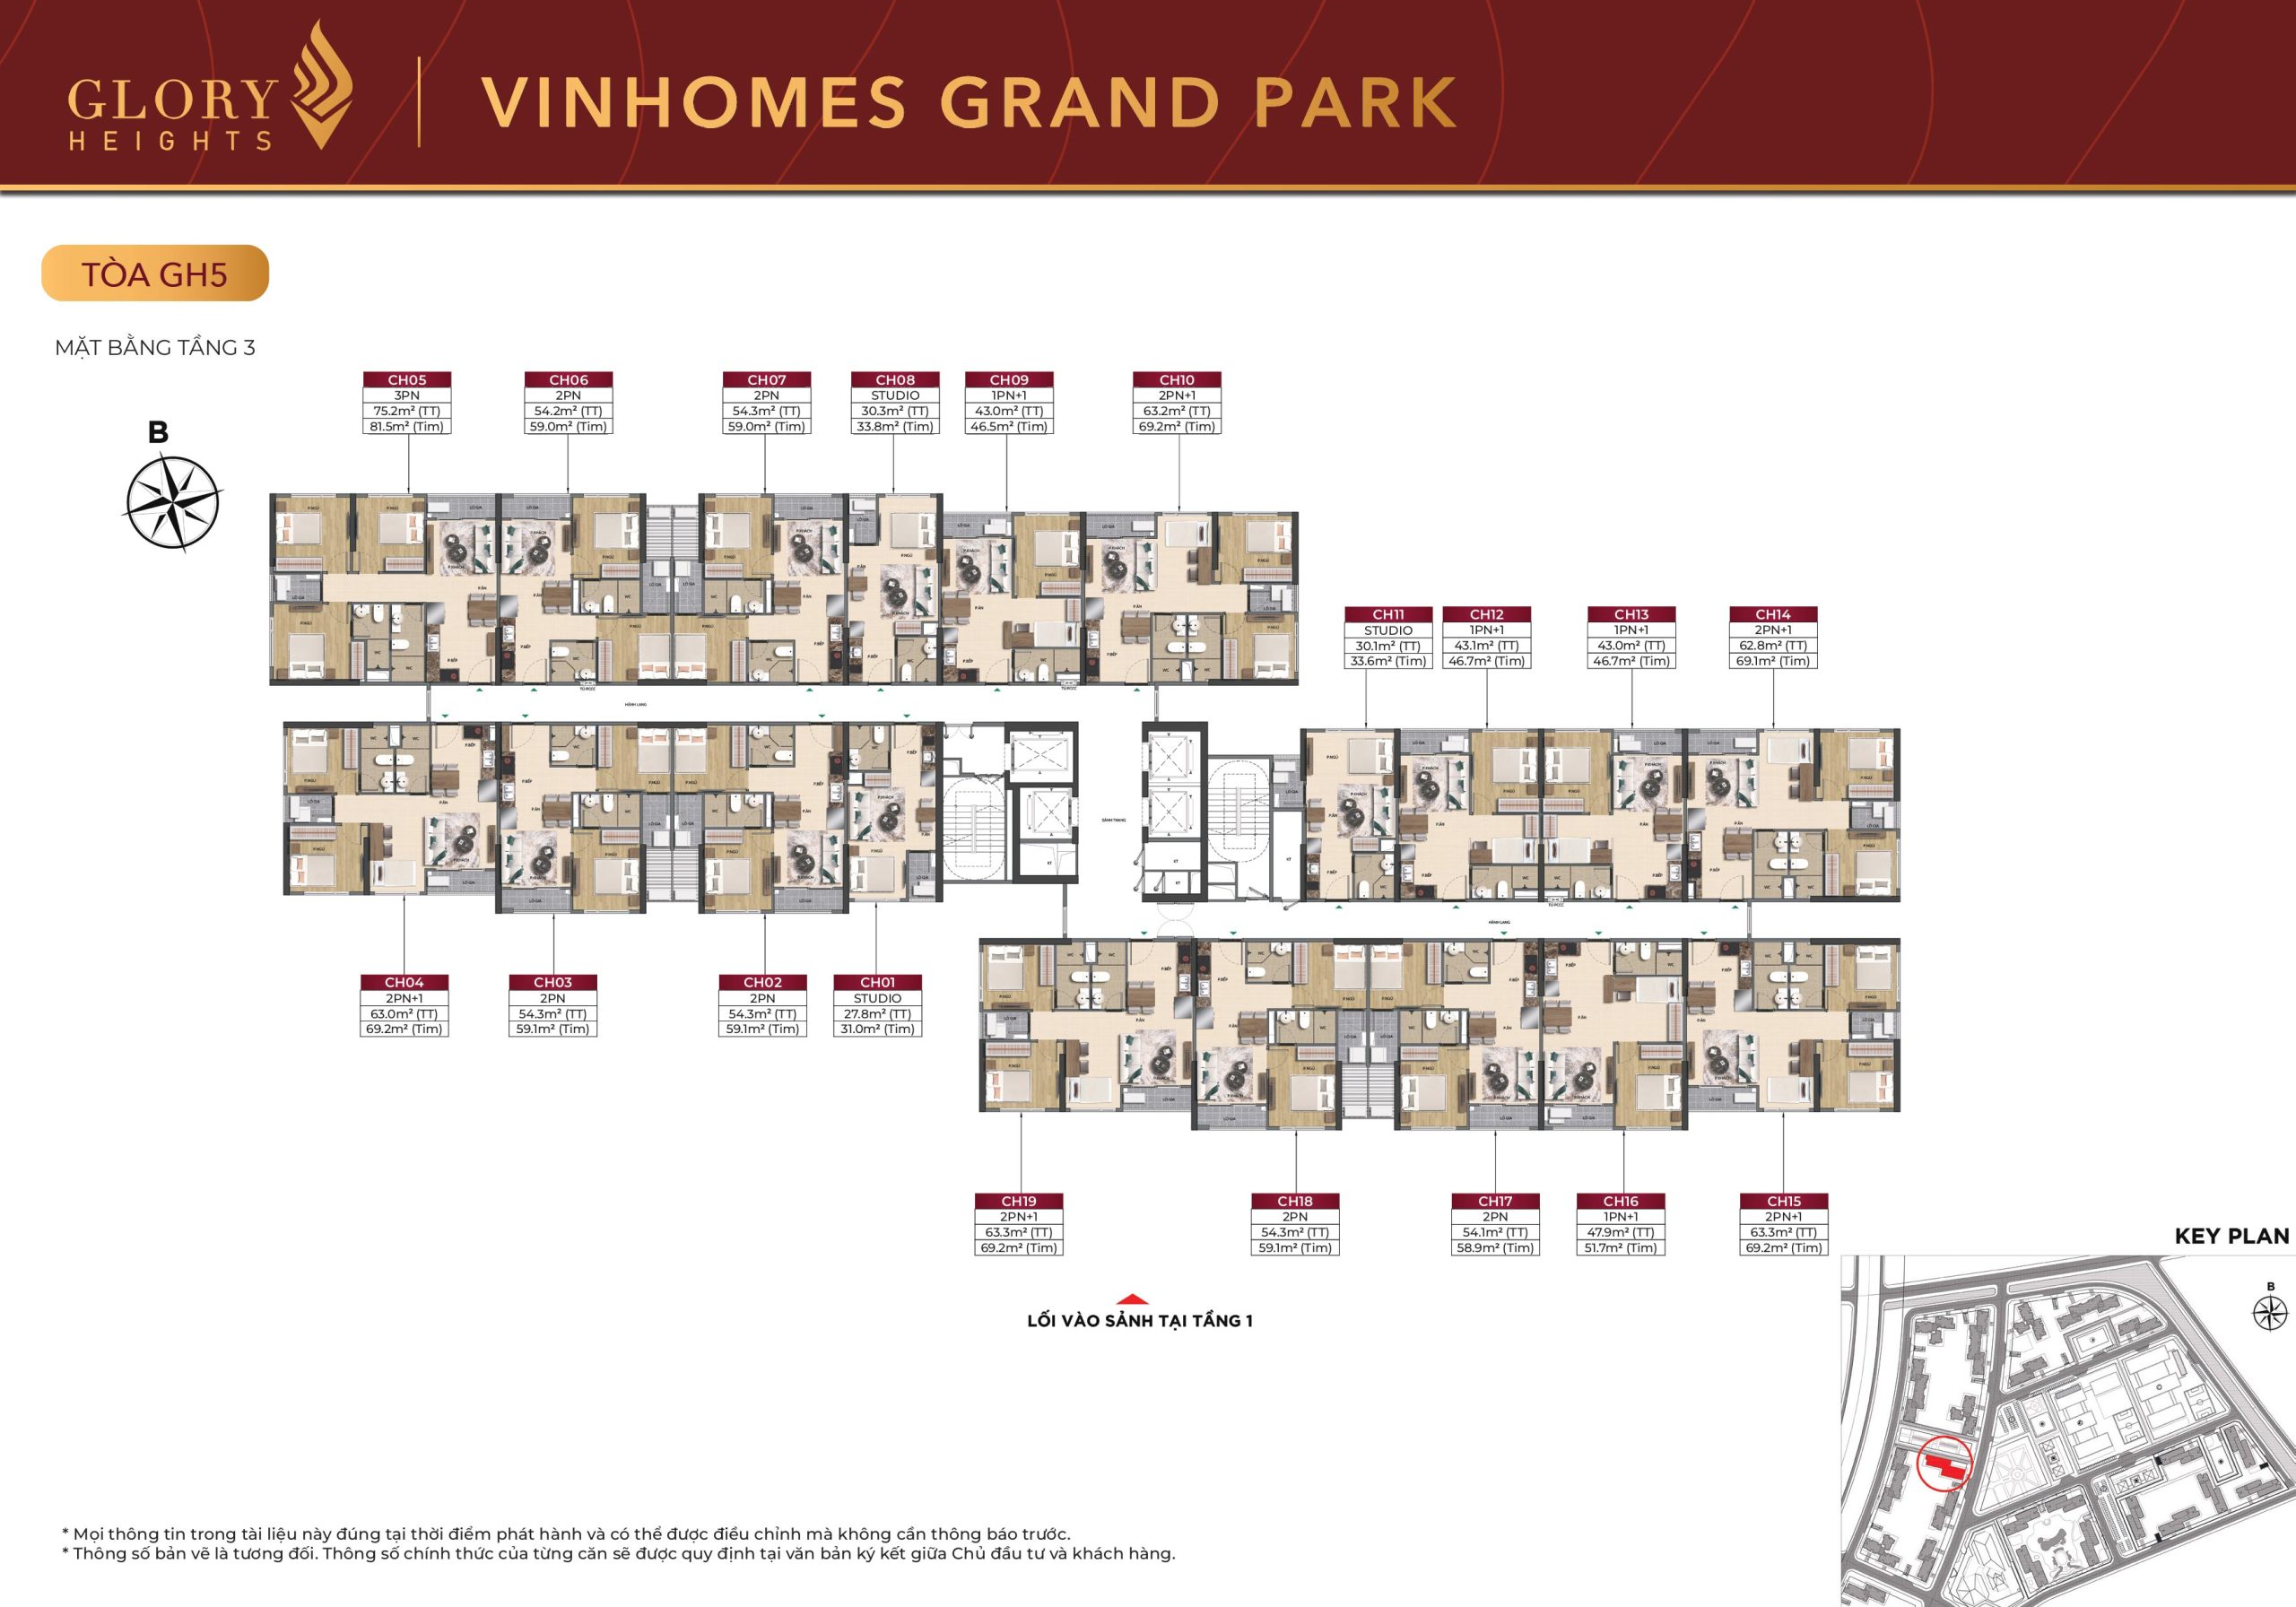 Mặt bằng chi tiết căn hộ Glory Heights Vinhomes Grand Park - 151